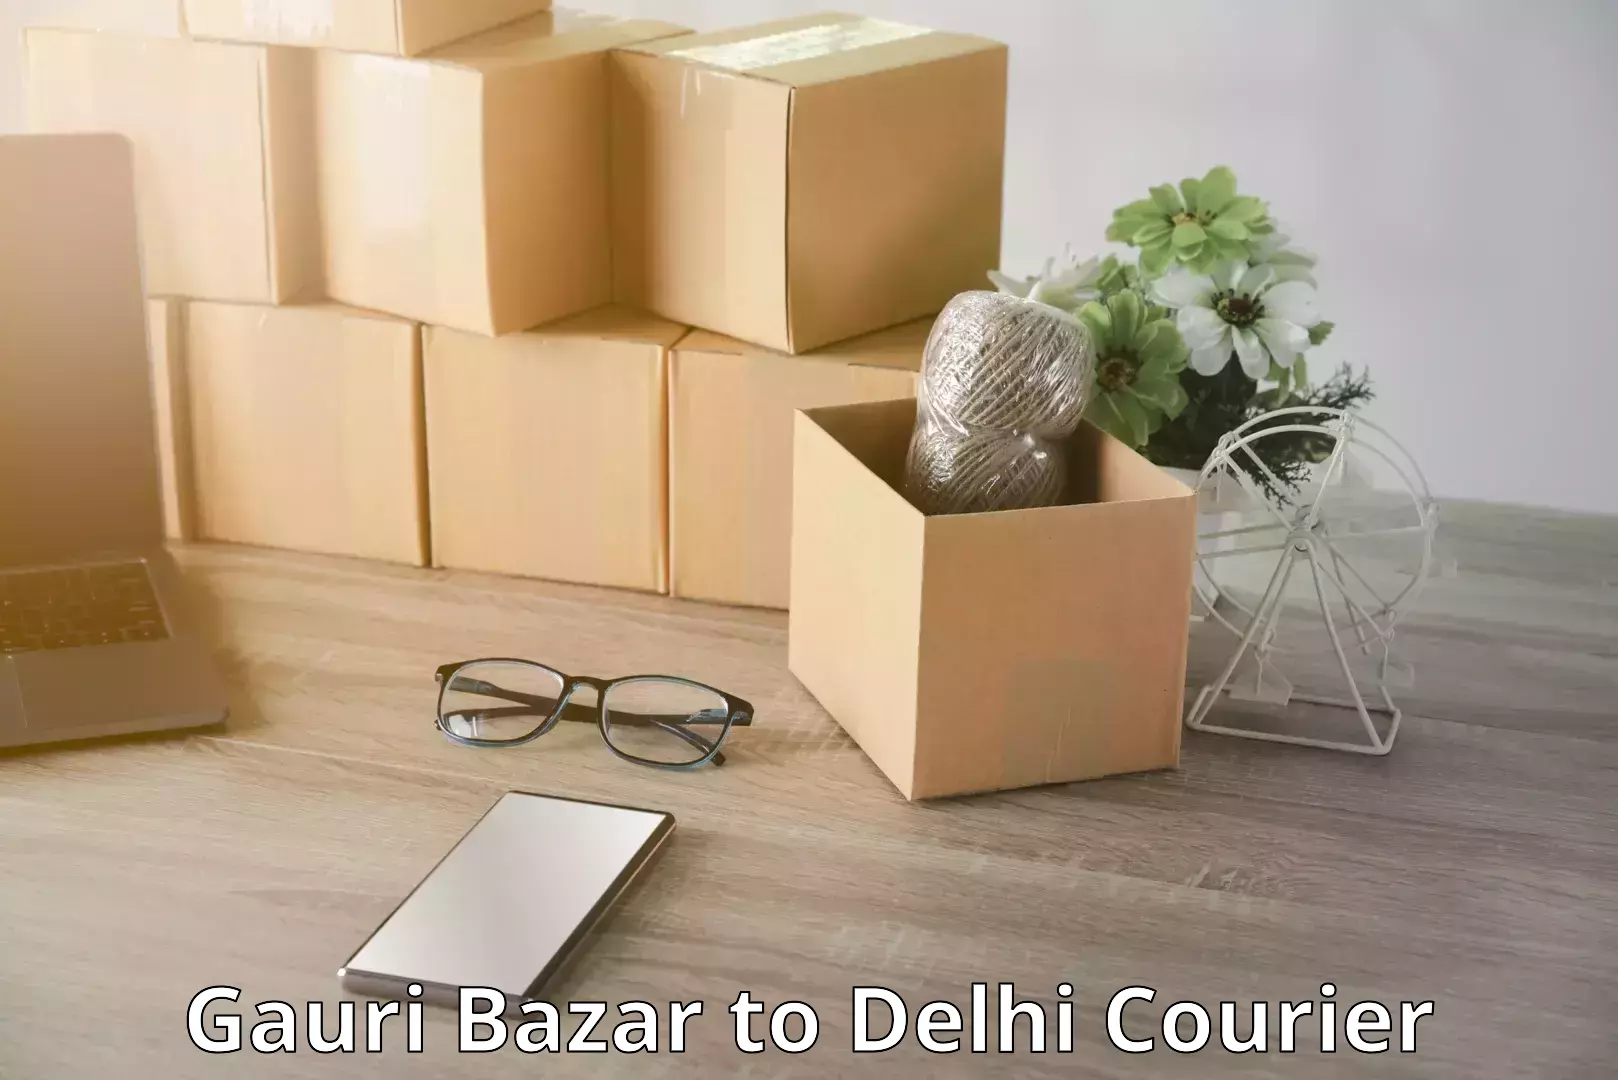 Luggage transfer service Gauri Bazar to Delhi